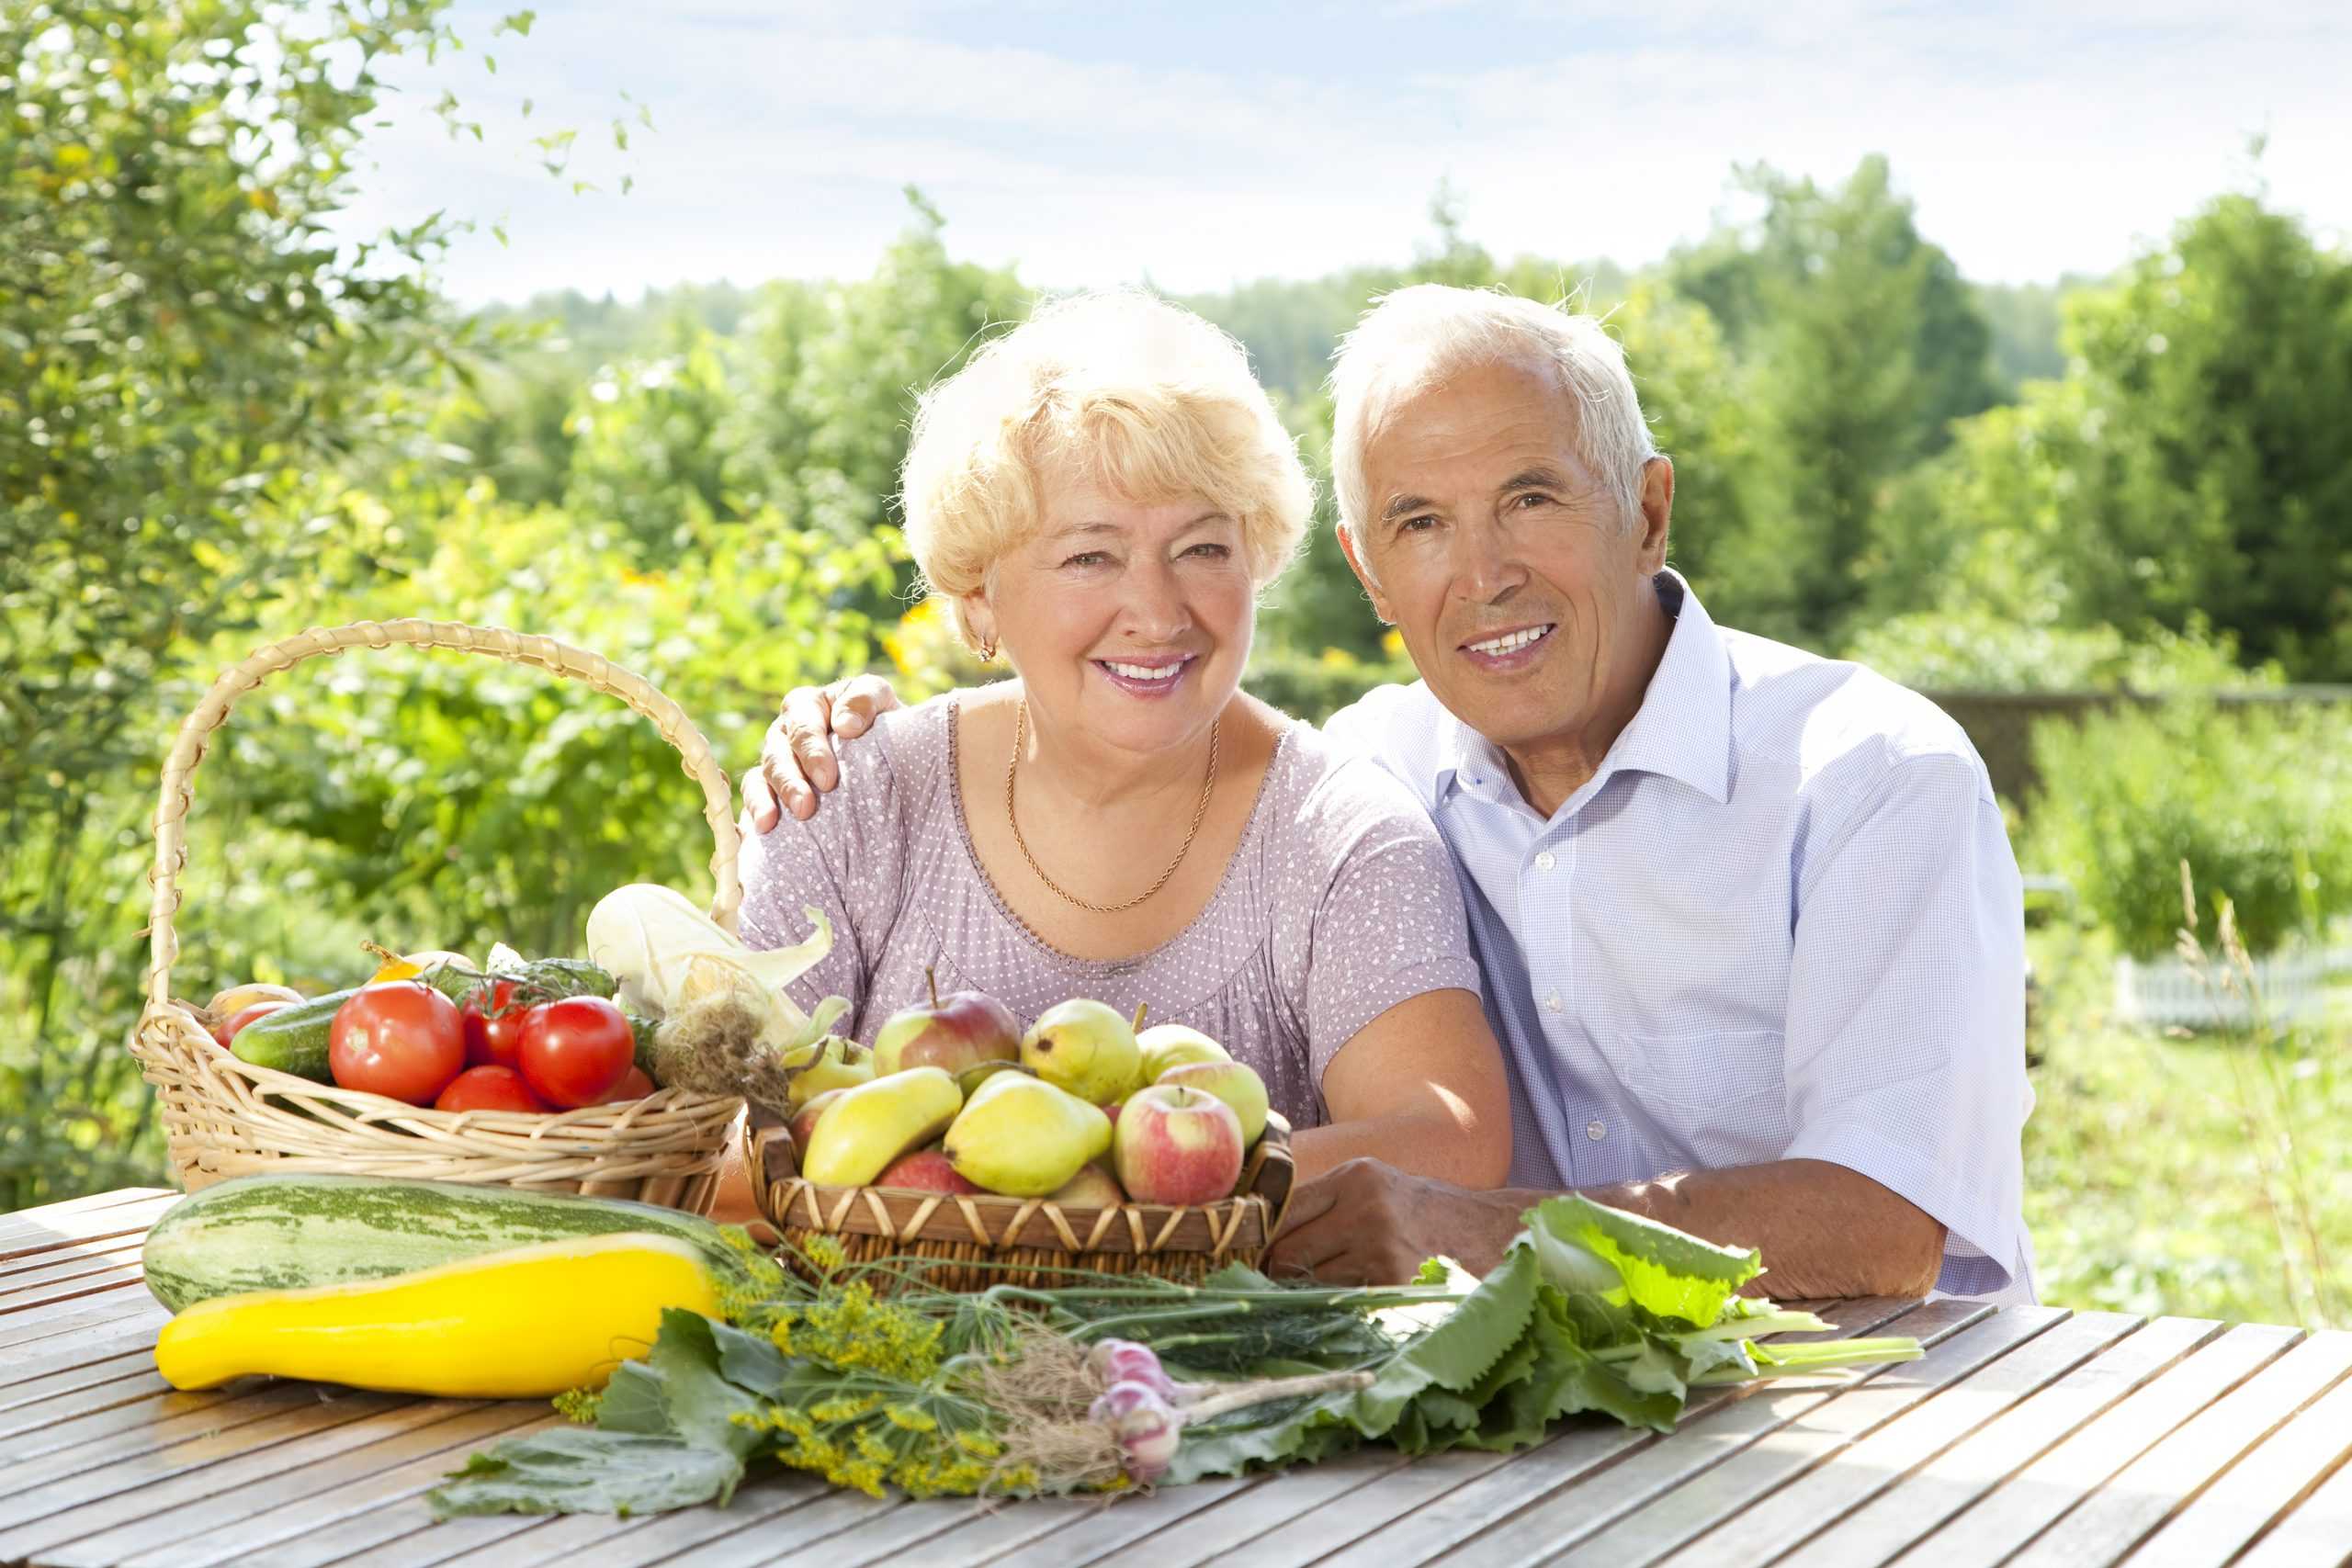 Питание три возраста. Здоровое питание пожилых. Рациональное питание пожилых. Здоровое питание в пожилом возрасте. Здоровое питание для людей пожилого возраста.